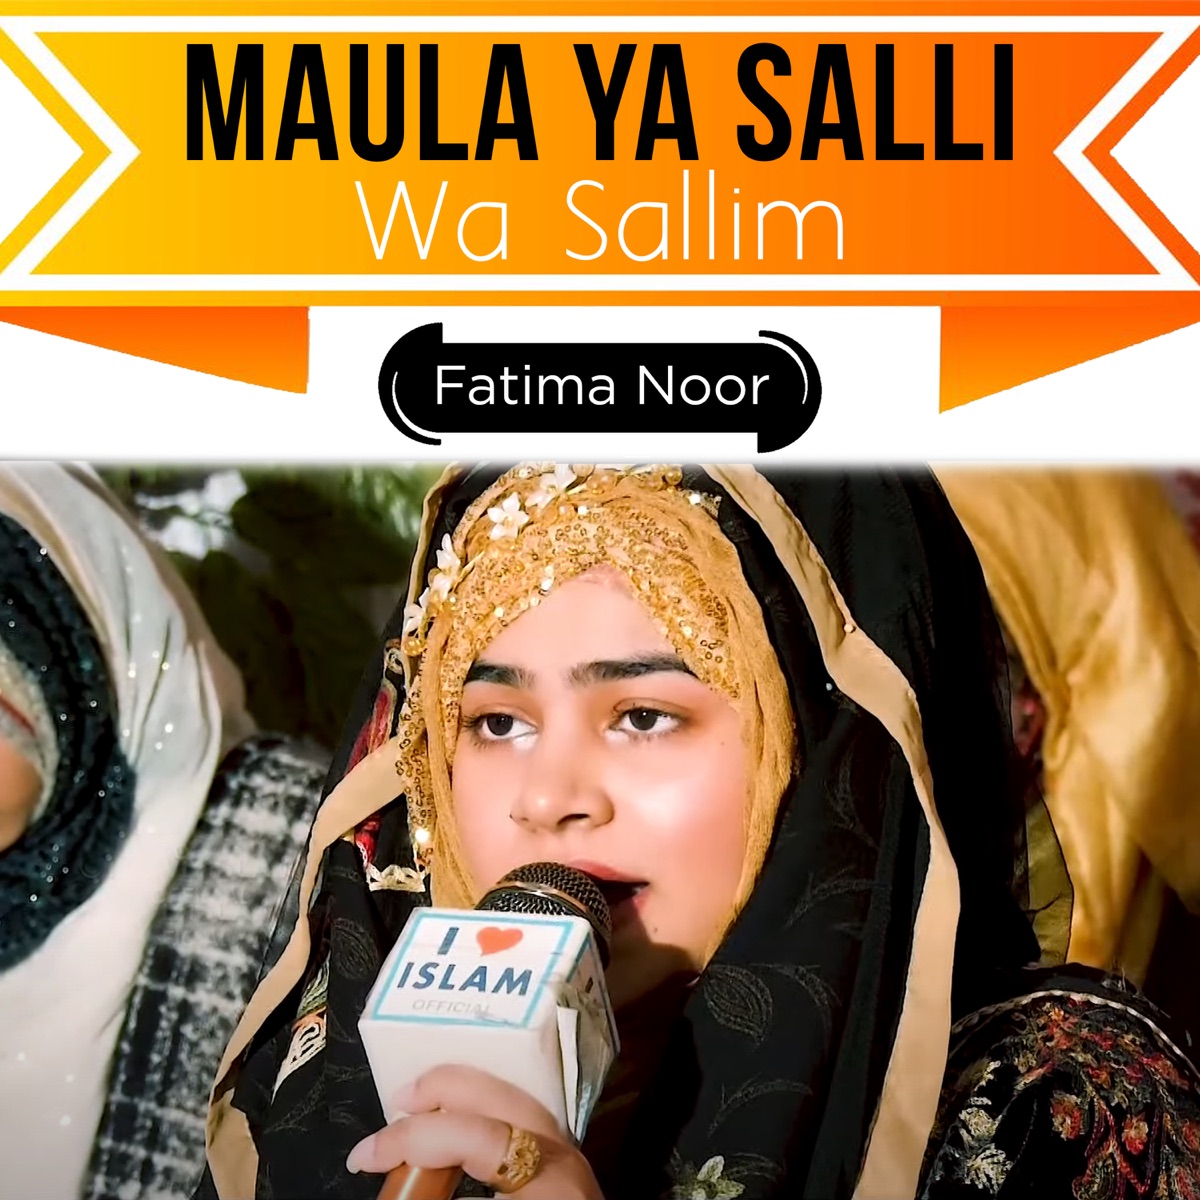 Maula Ya Salli Wa Sallim - Single - Album by Fatima Noor - Apple Music